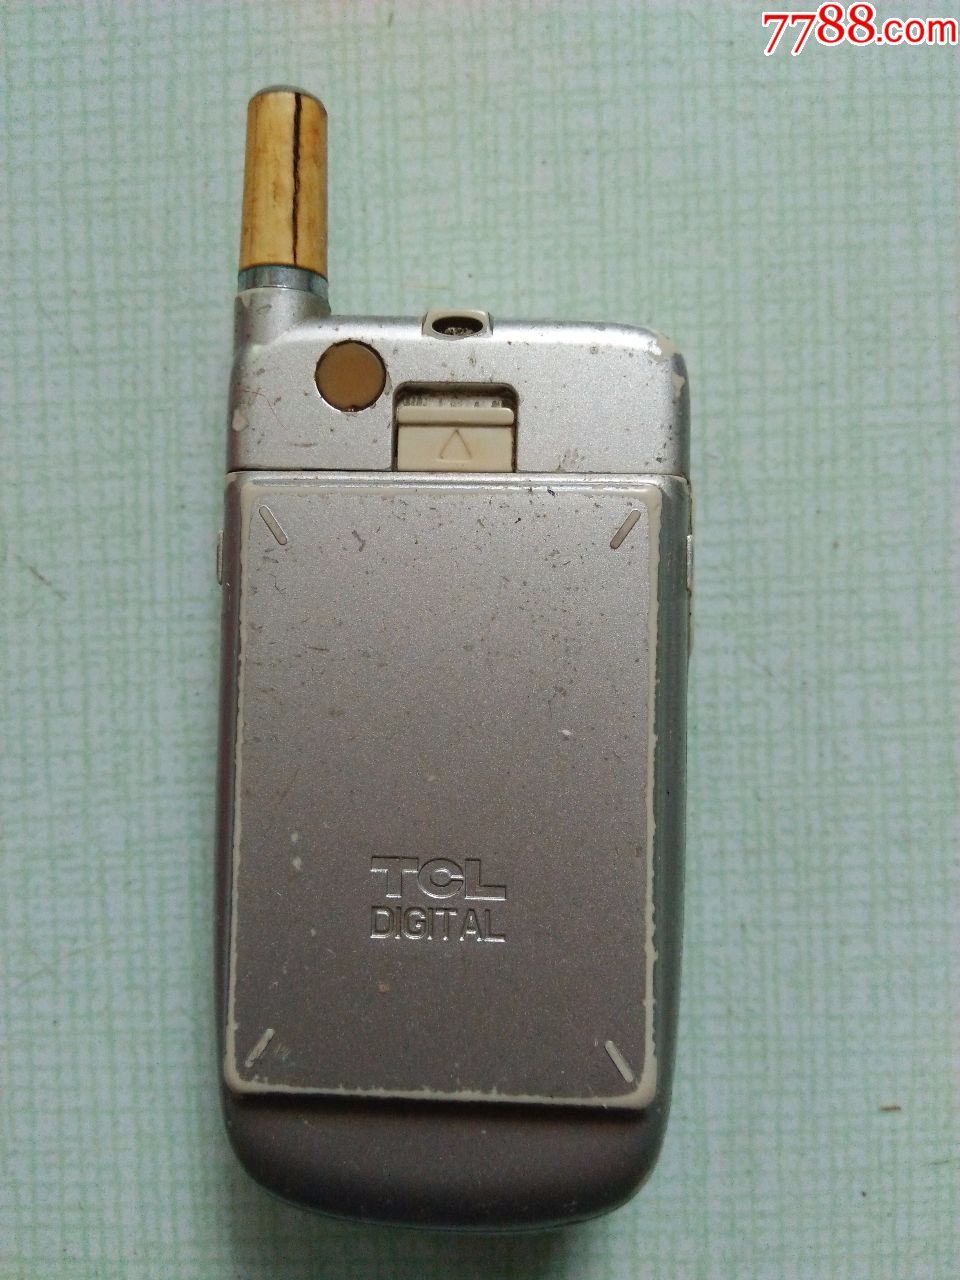 TCL翻盖手机(型号:2388)